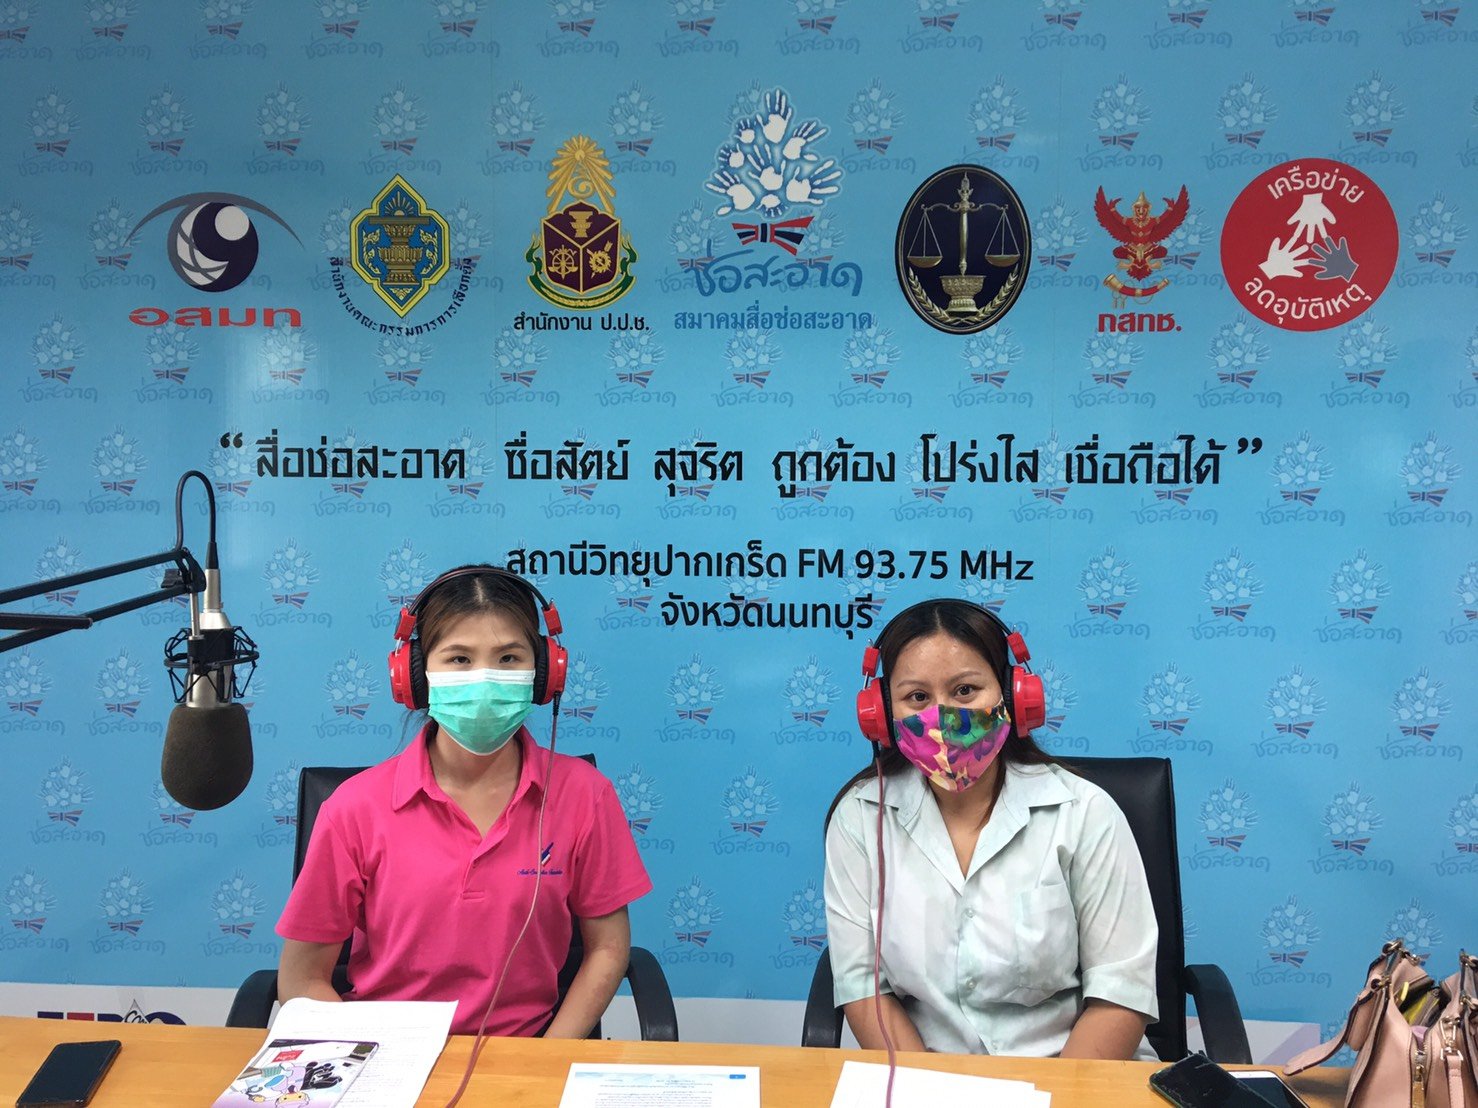 รายการ “คนไทยไม่ทนต่อการทุจริต” วันอาทิตย์ที่ 8 สิงหาคม 2564 เวลา 18.00-18.30 น.